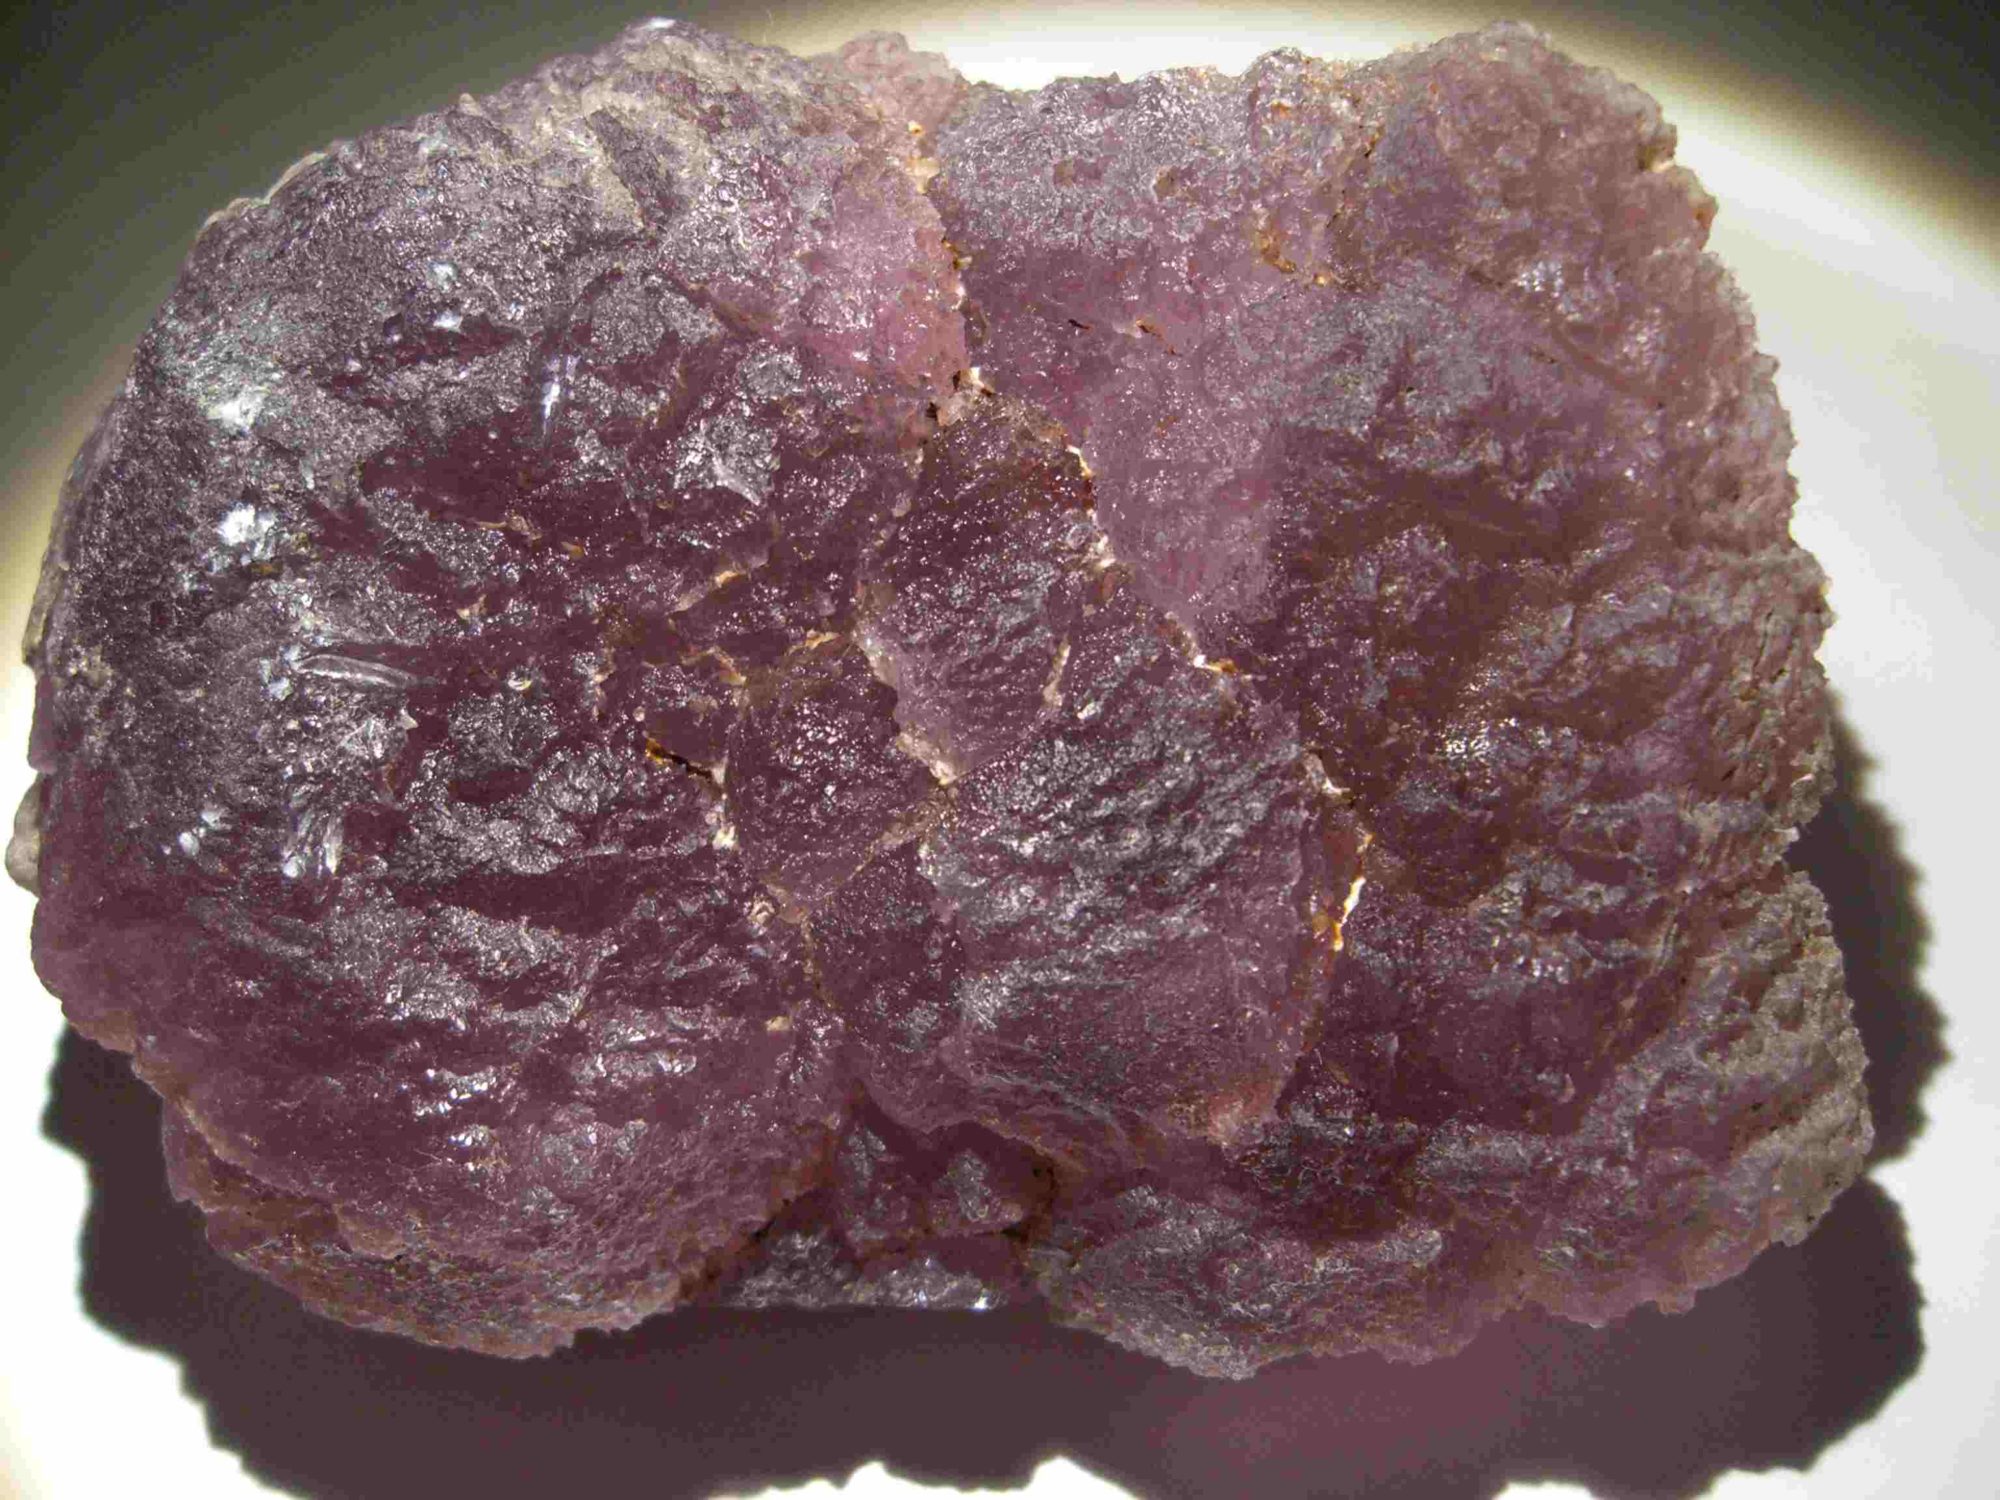 Fluorine rose violette du Morvan (Maine Reclesne).